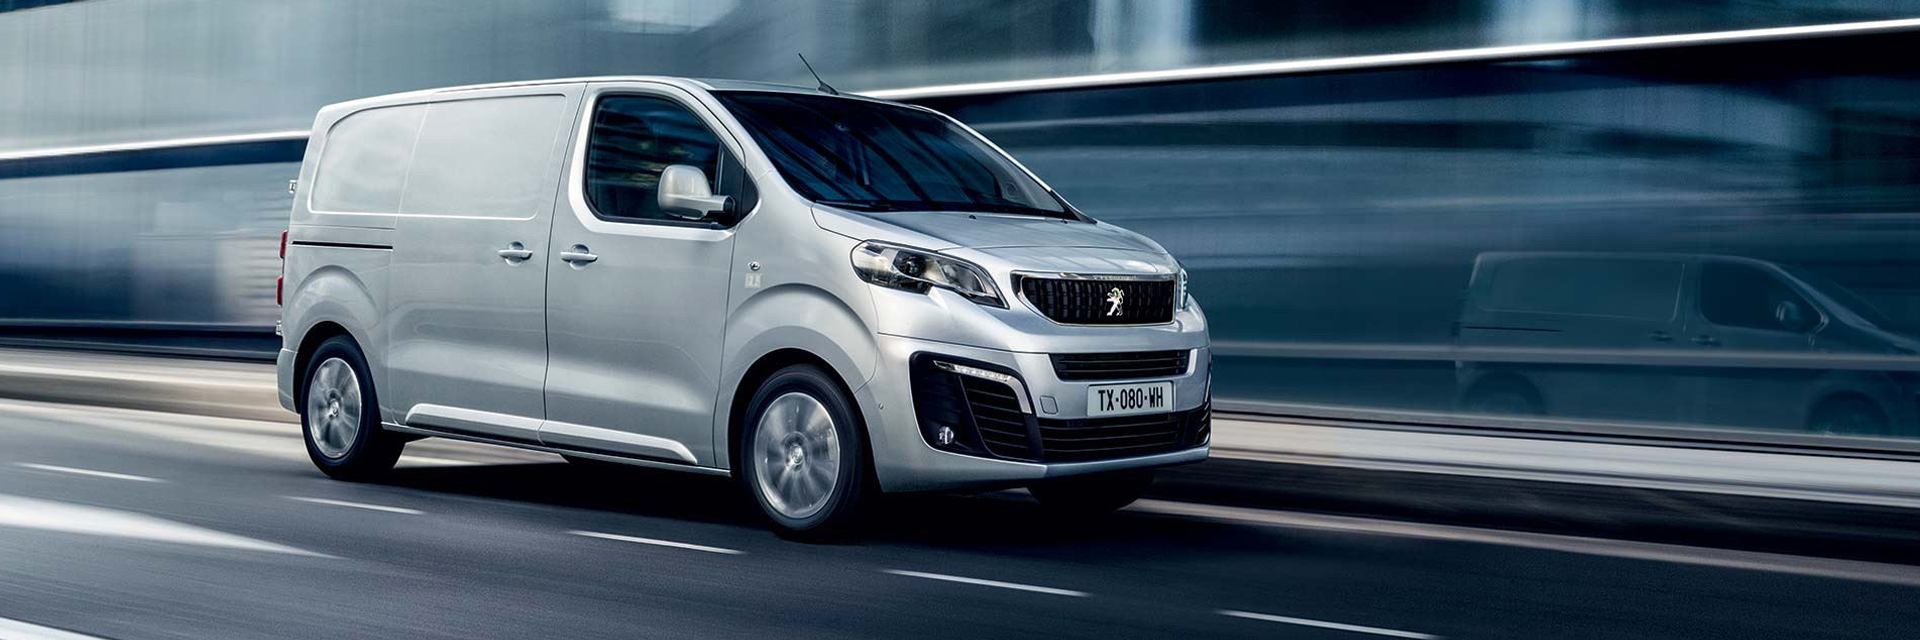 Peugeot Expert, carros usados, carros novos, carros de serviço